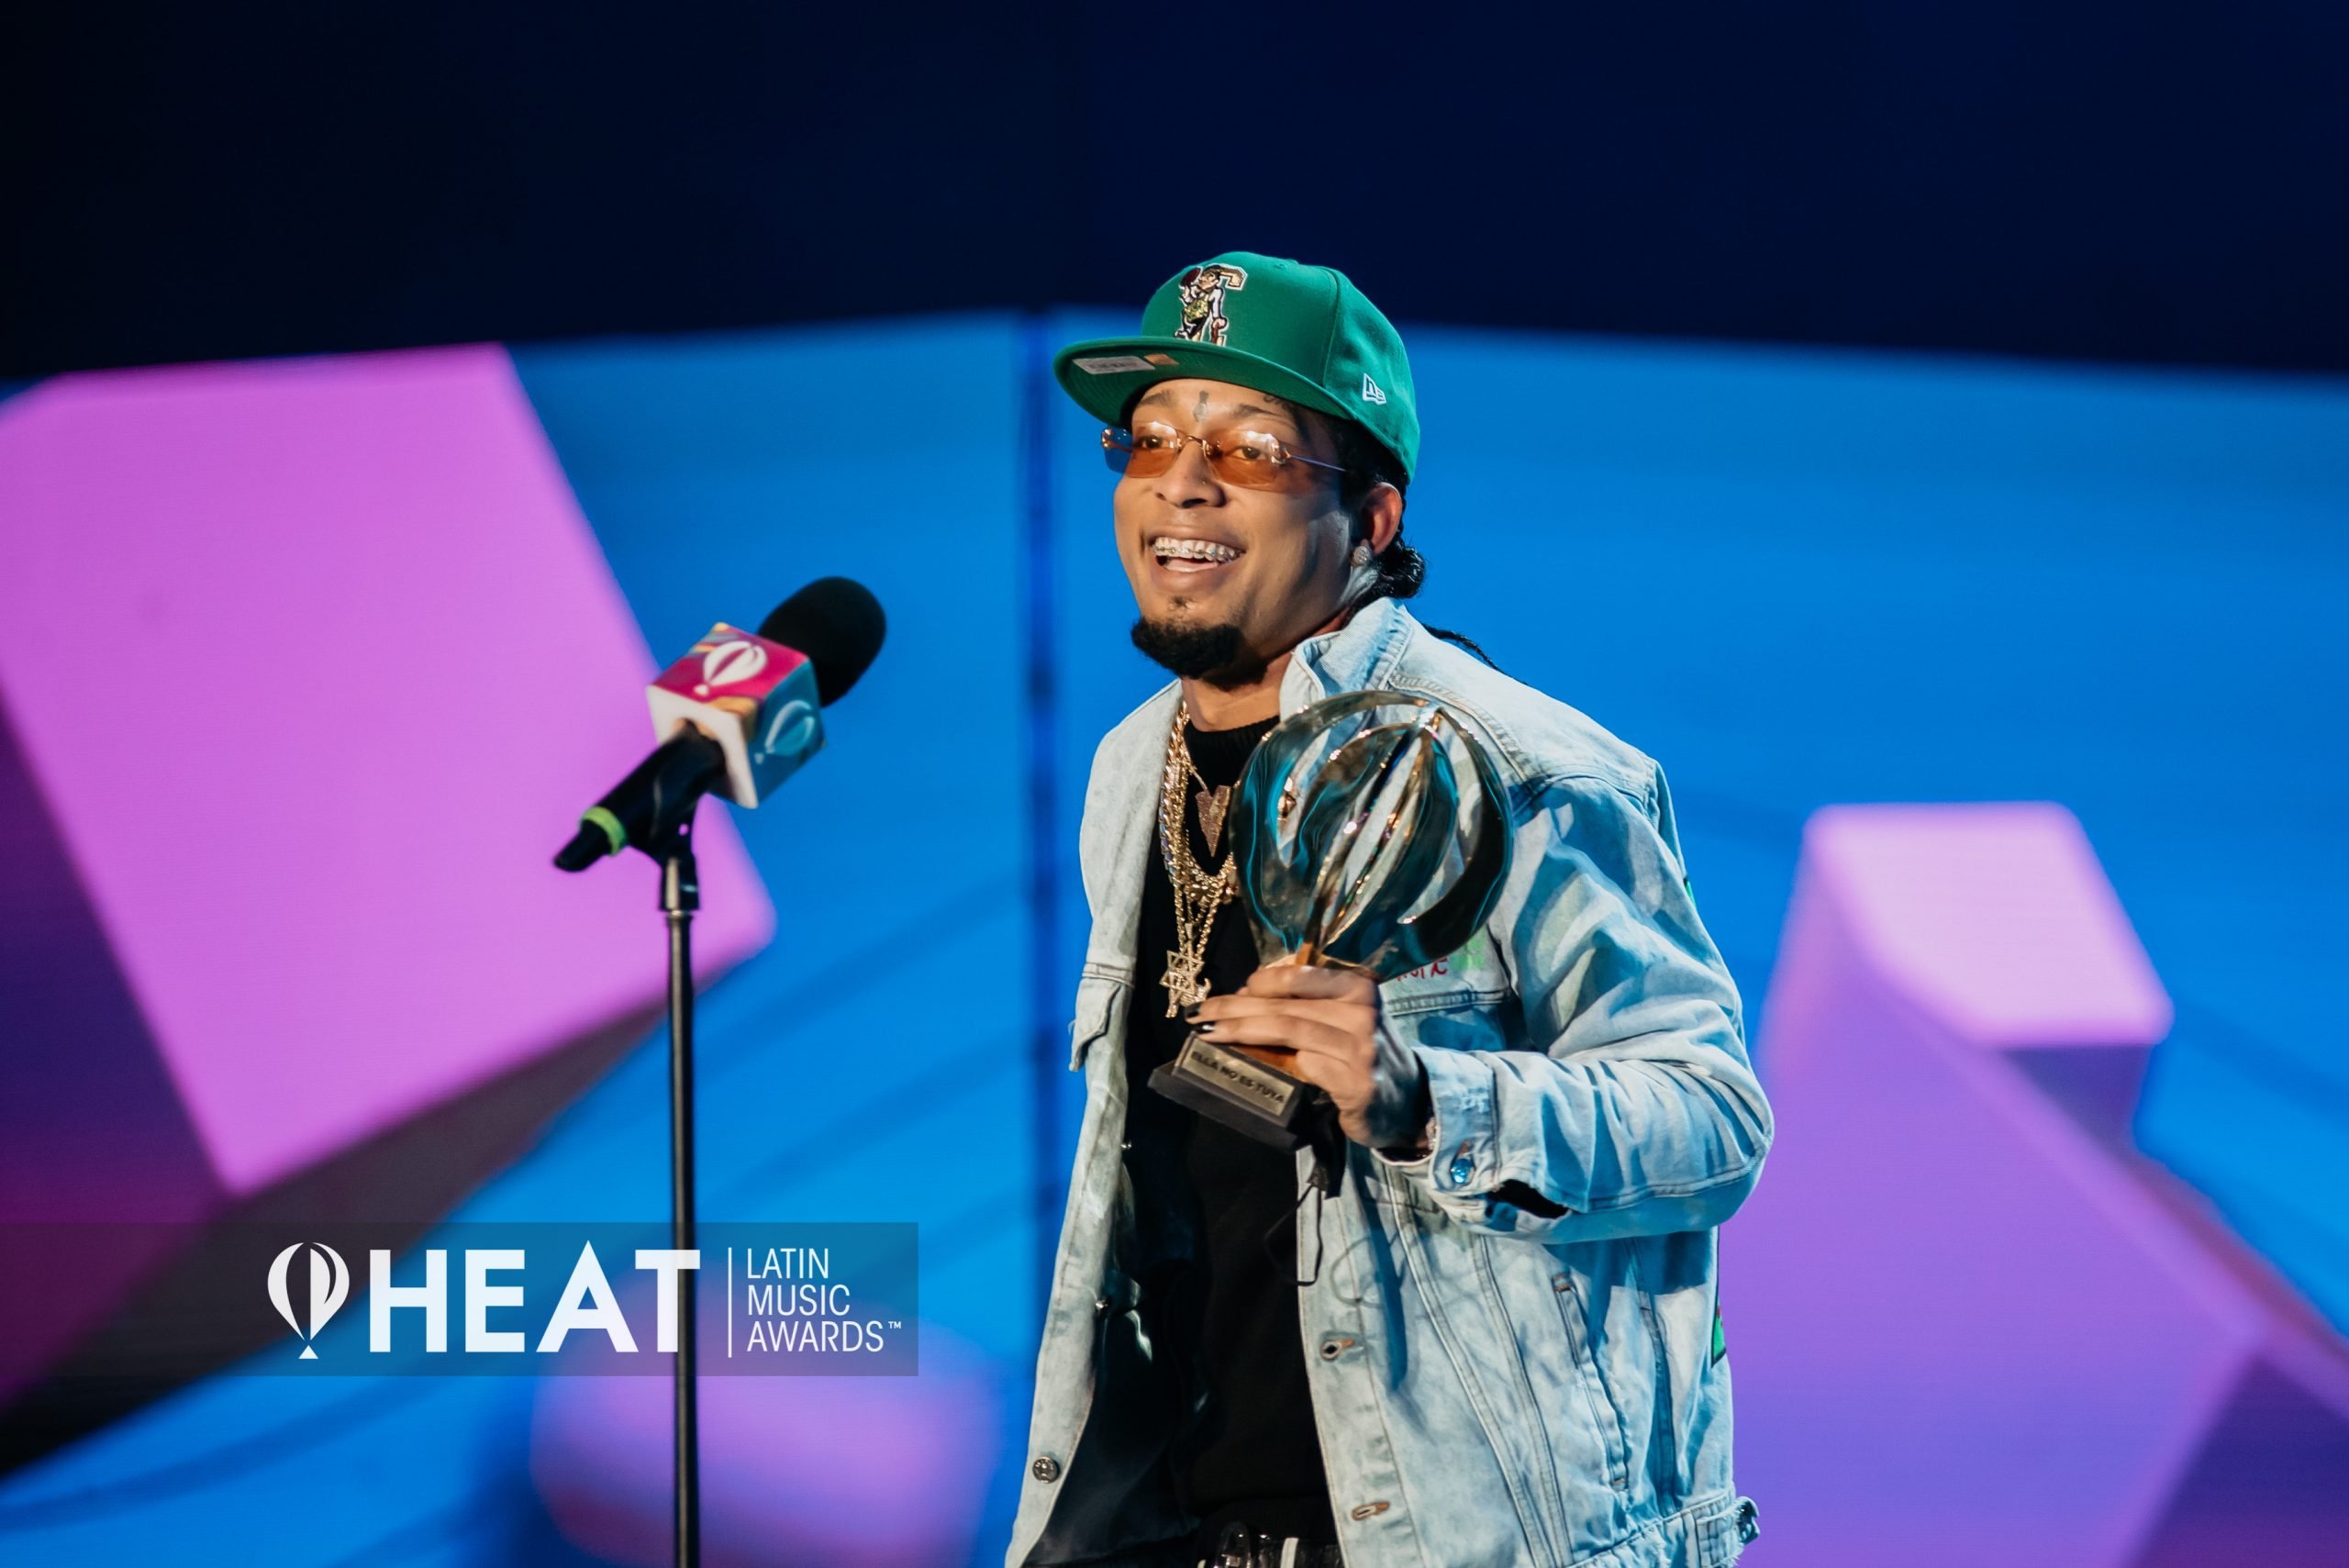 Premios Heat celebraron su sexta edición desde Cap Cana, RD